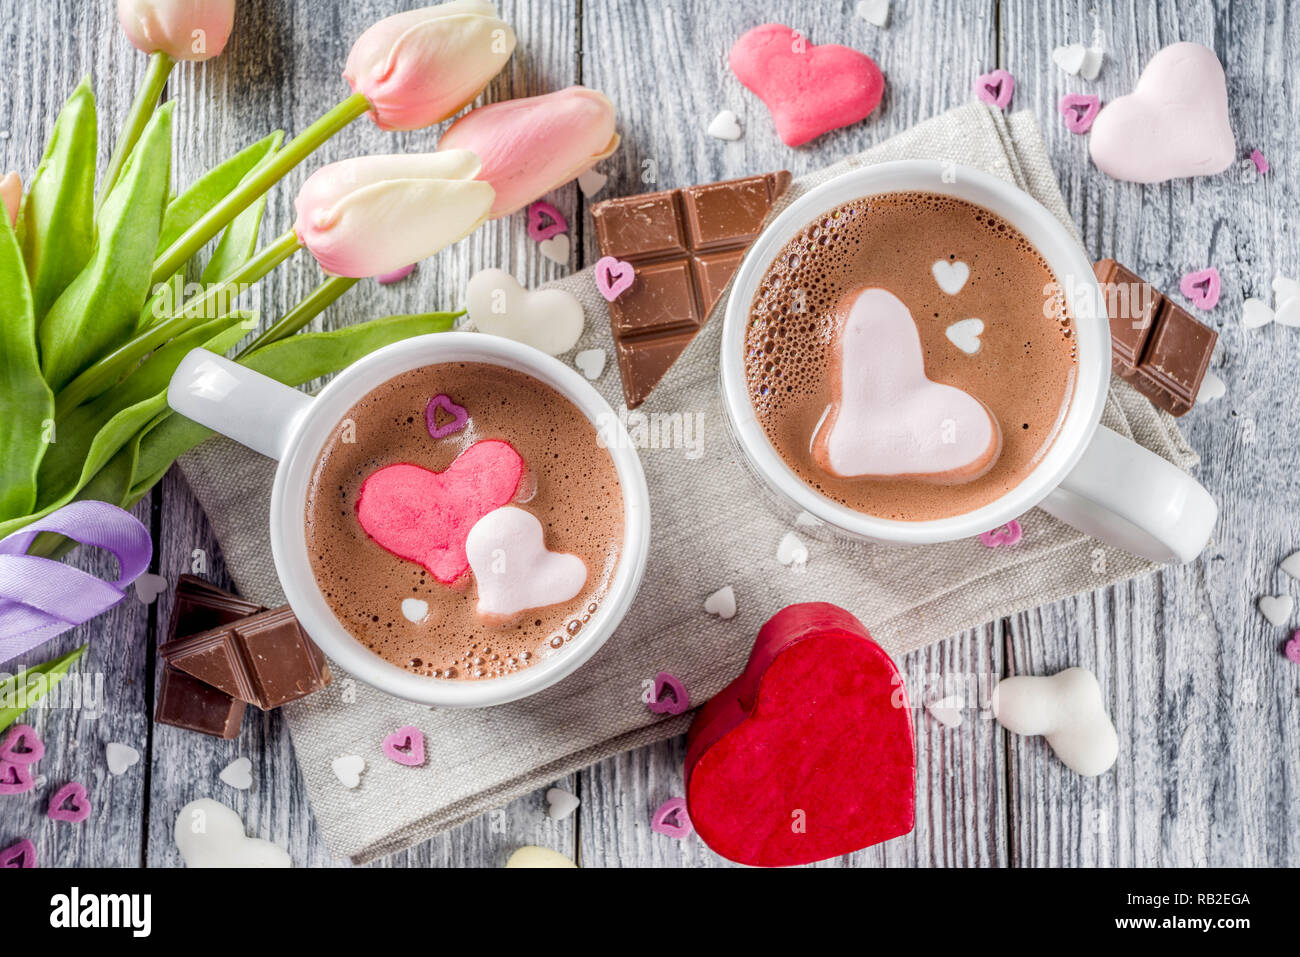 Día de San Valentín tratar ideas, dos tazas de bebida de chocolate caliente con malvavisco corazones rojo color blanco rosado con trozos de chocolate, espolvorea azúcar, madera vieja Foto de stock